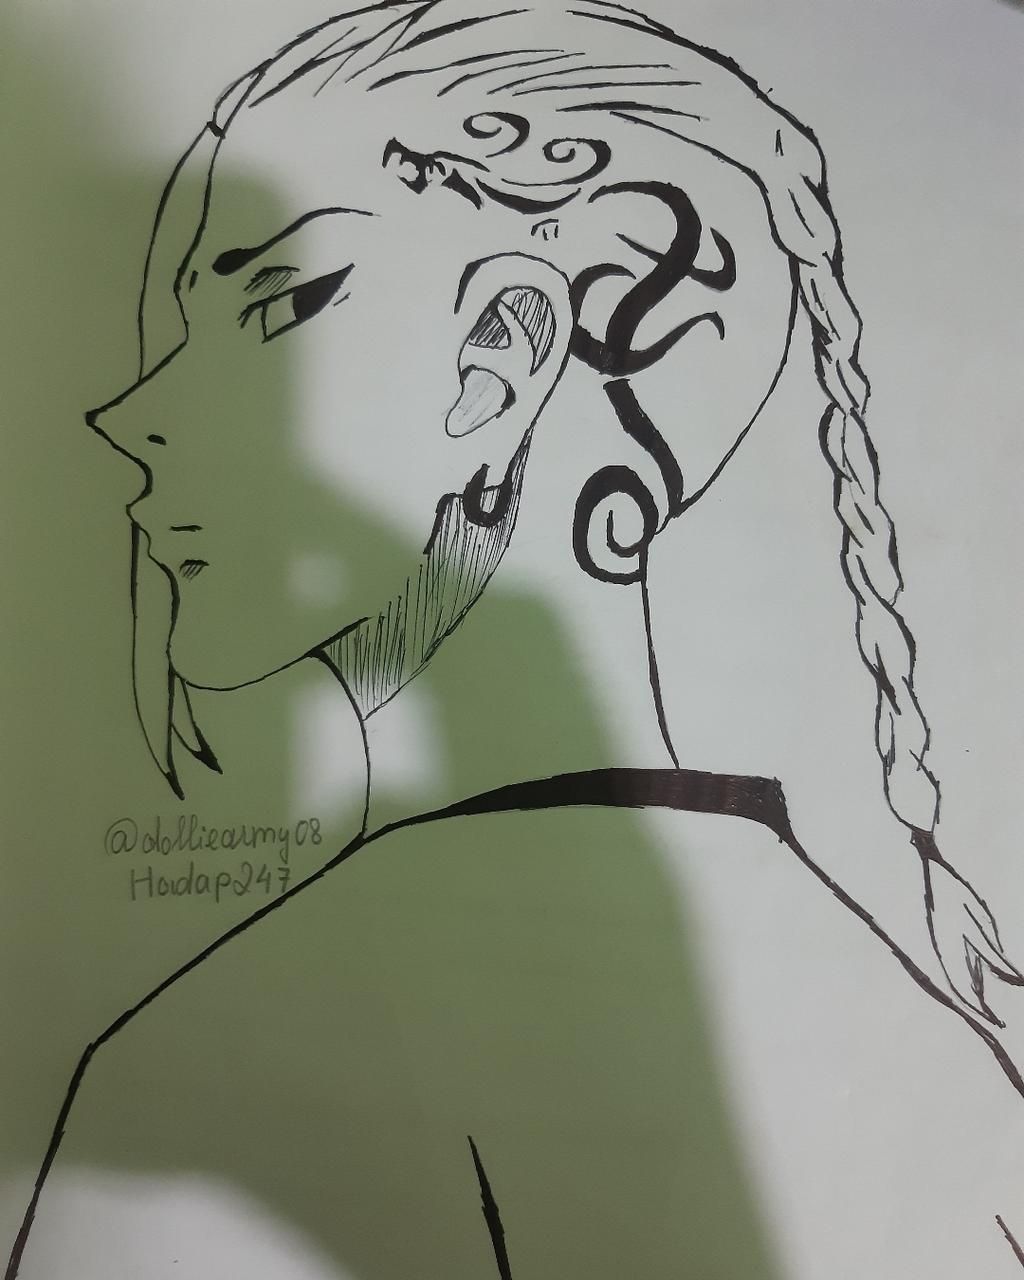 Vẽ Draken: Sáng tạo và vẽ hình của Draken đang trở thành xu hướng được yêu thích hiện nay. Hãy xem các hình ảnh độc đáo về Draken được tạo ra qua những bức tranh sơn dầu hoặc bút chì đẹp mắt.